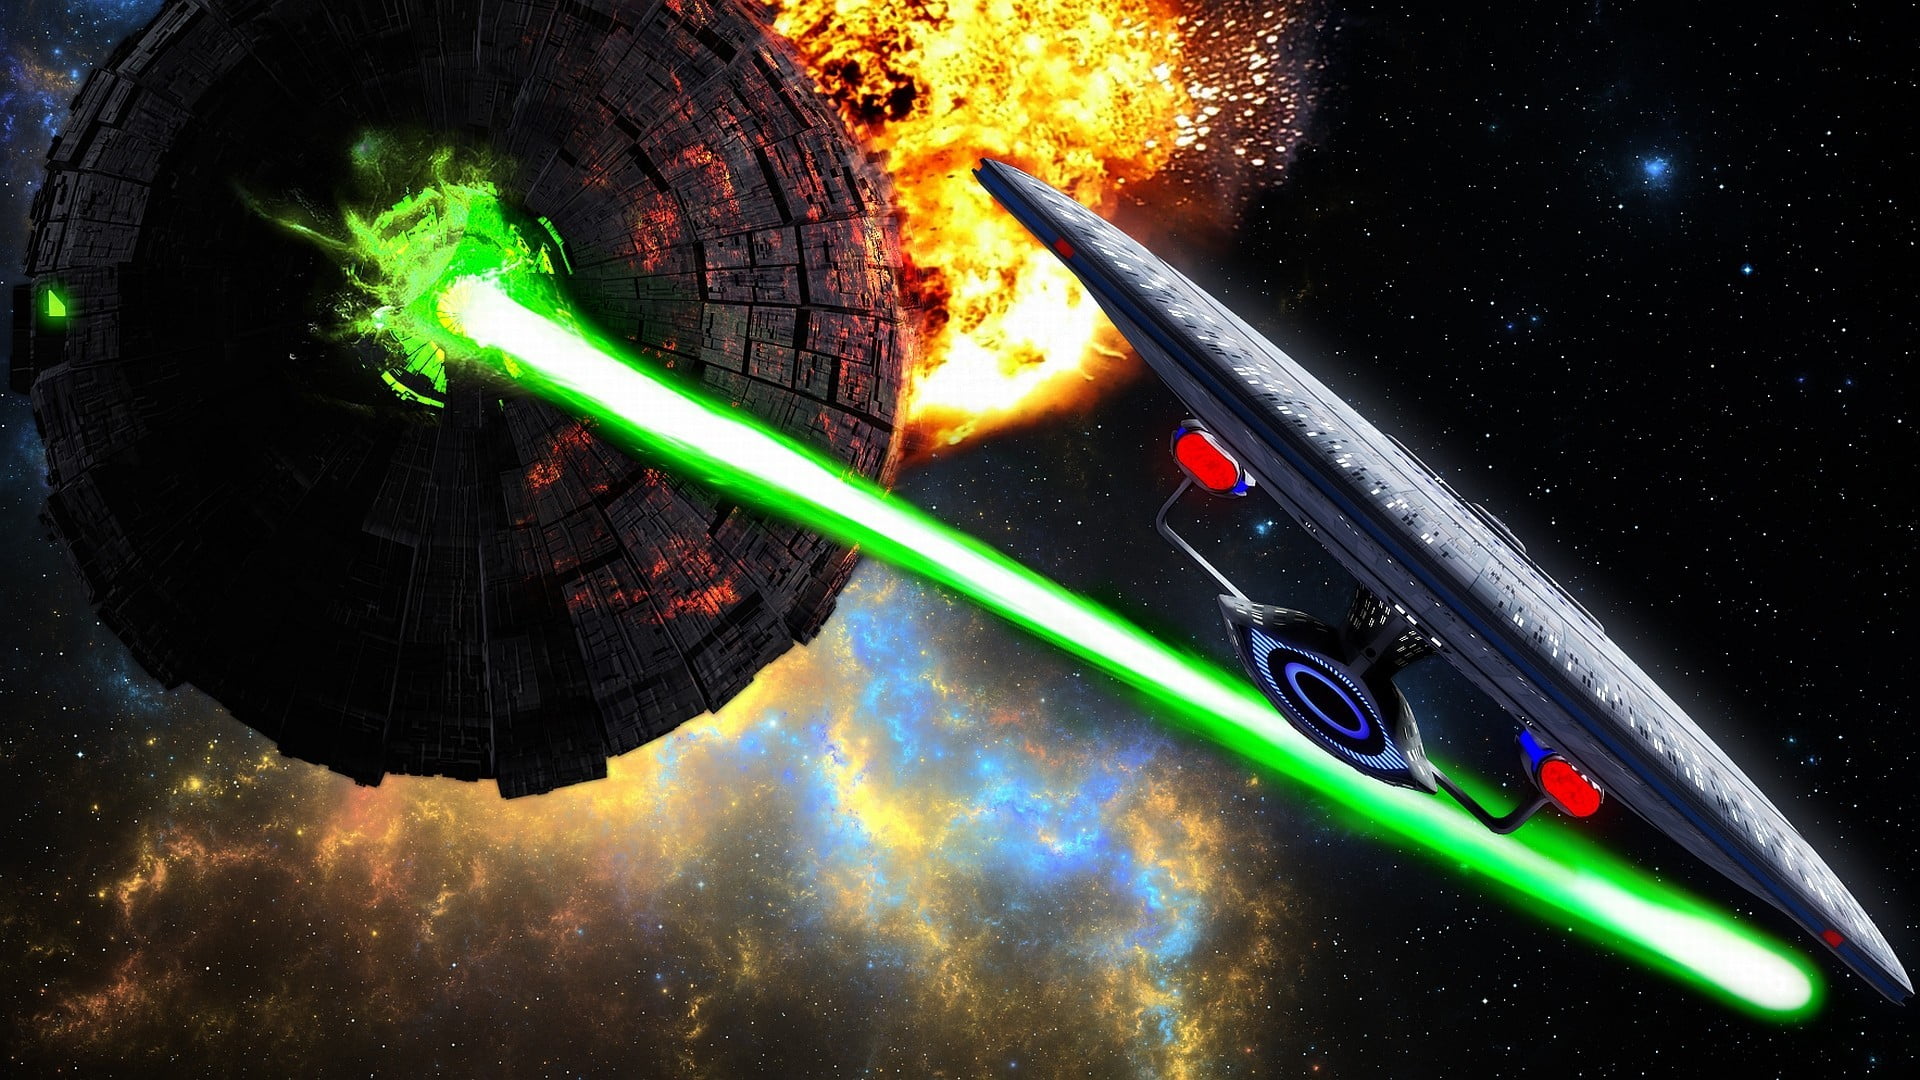 Star Wars Death Star digital wallpaper, artwork, Star Trek, green color